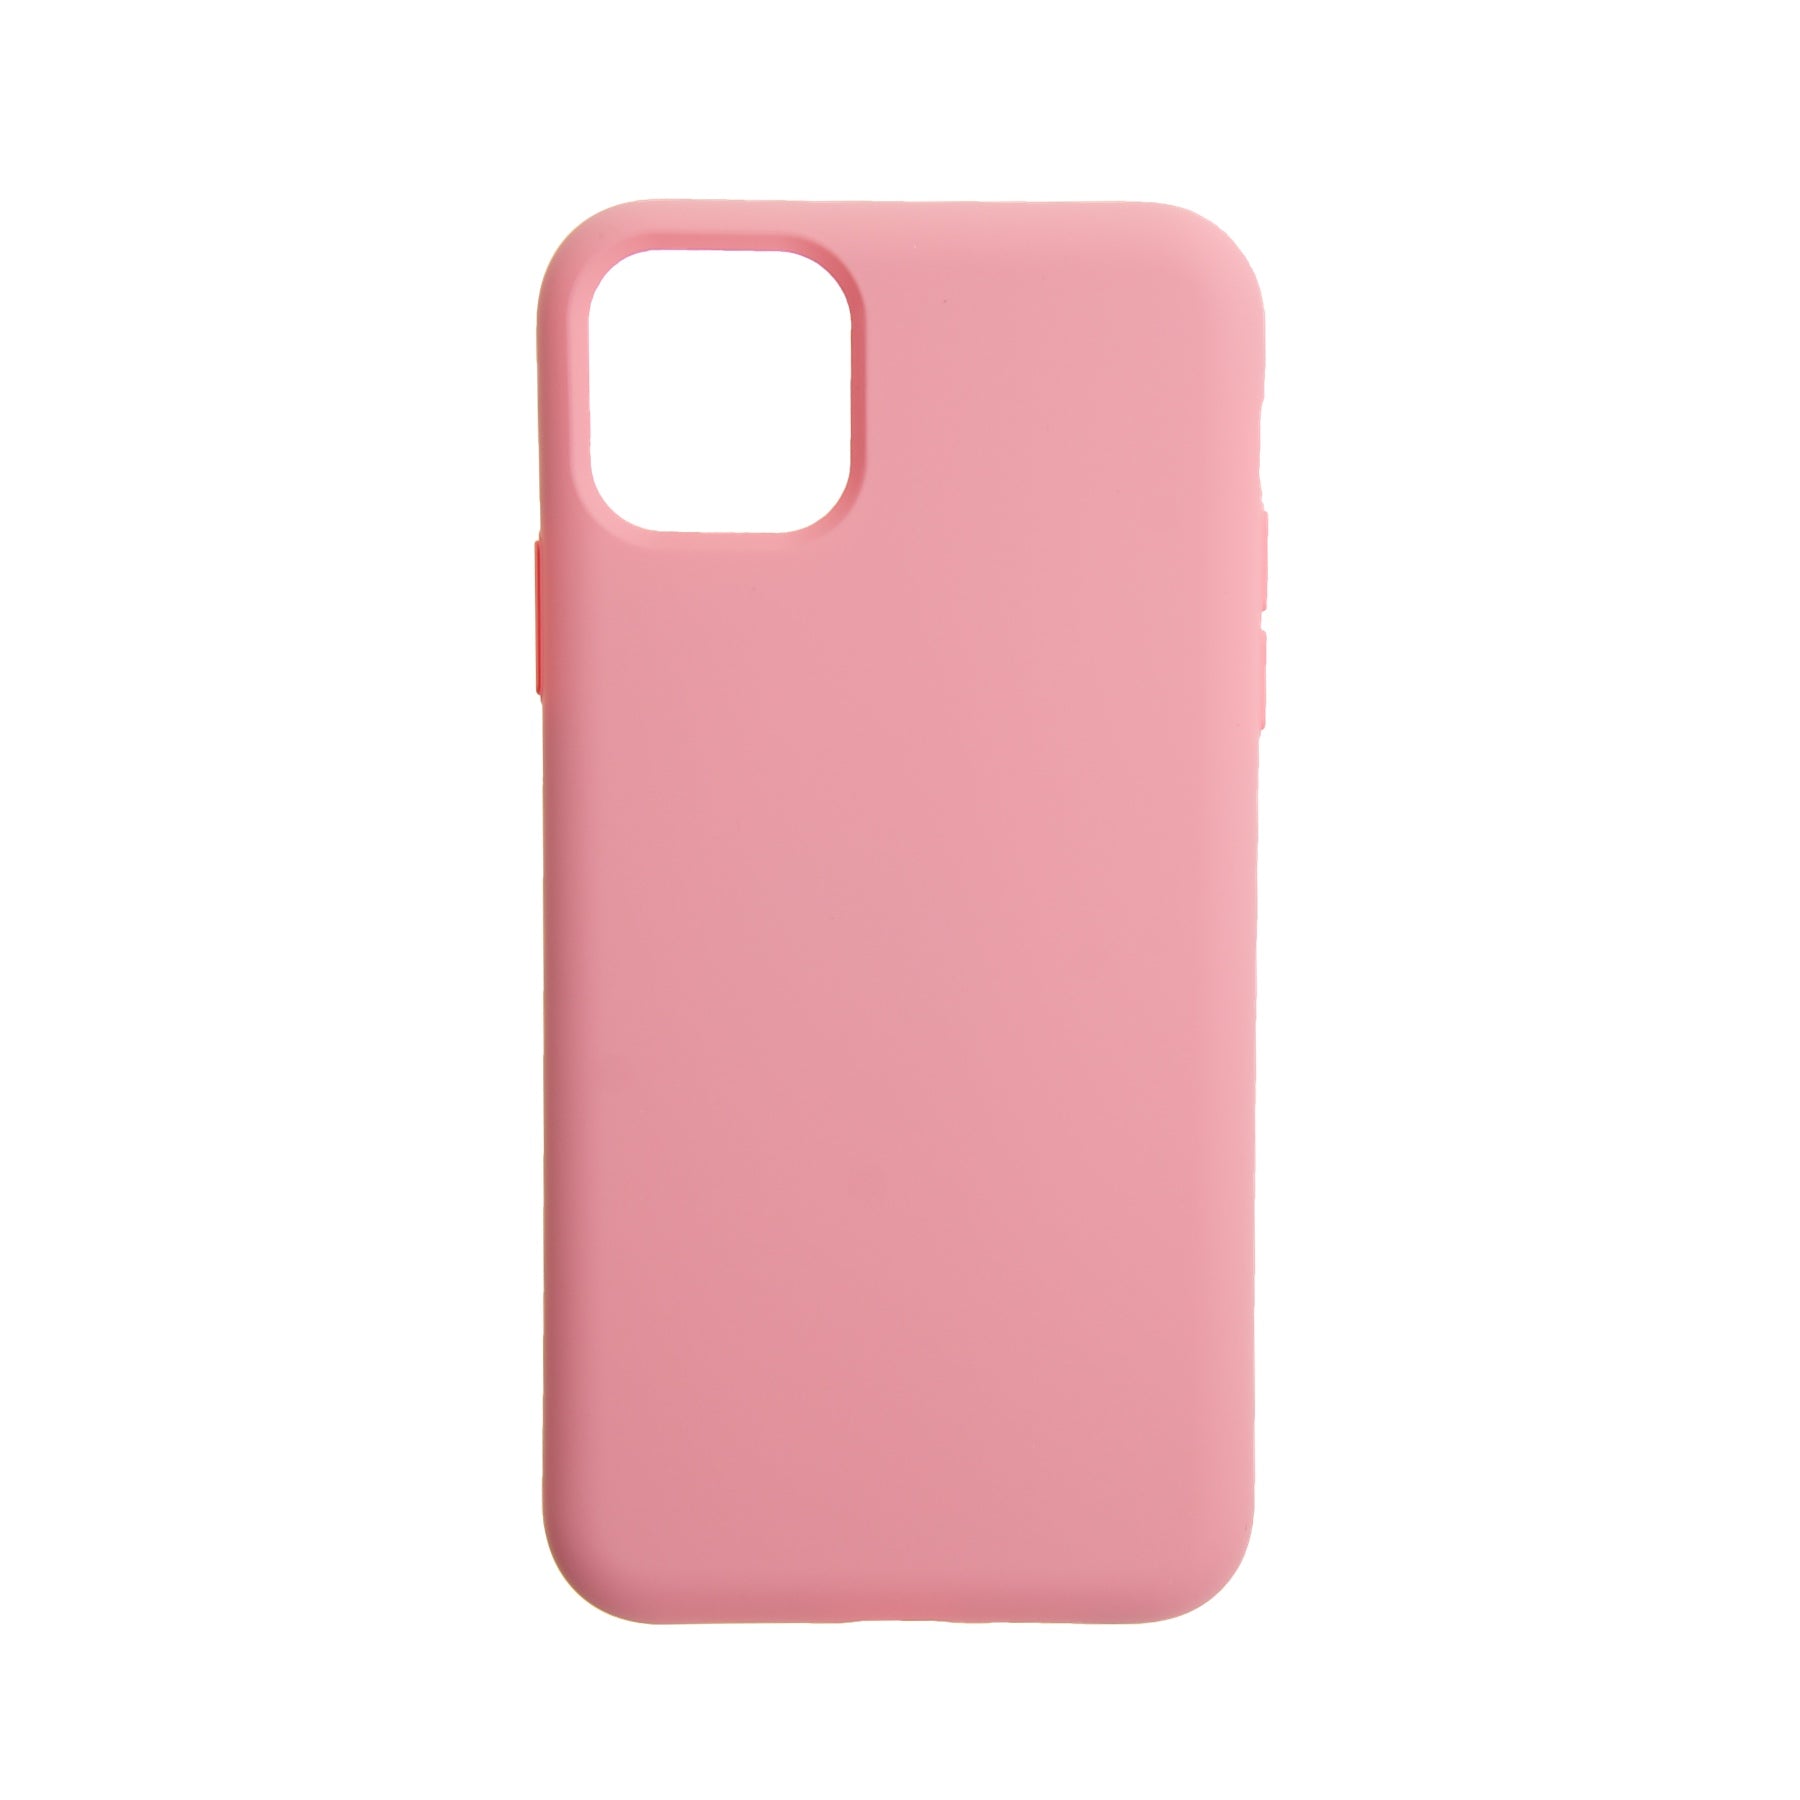 Estuche el rey silicon iphone 11 pro max color rosado